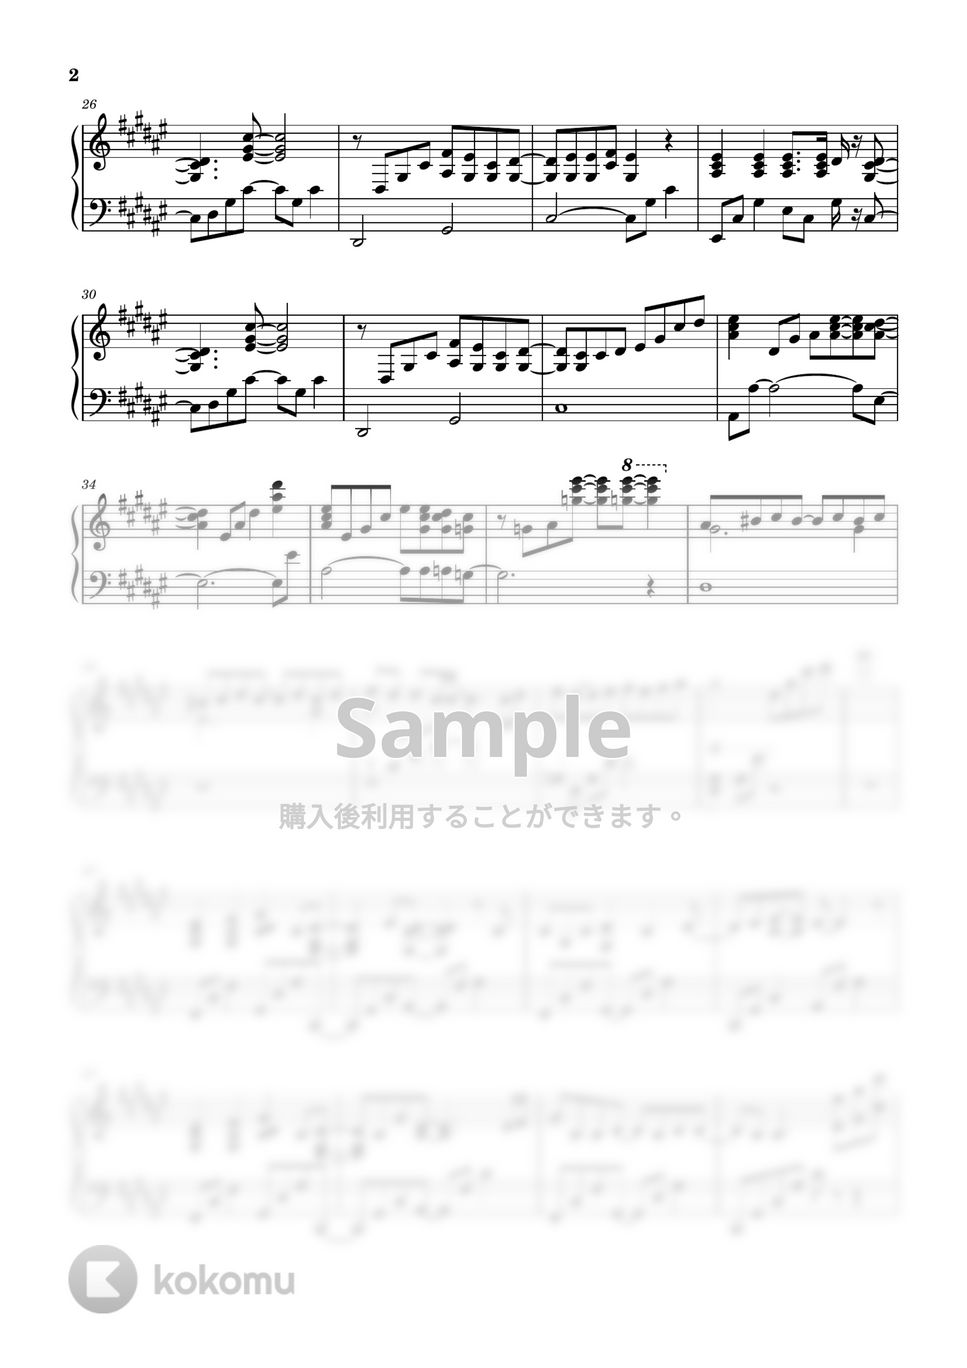 すとぷり - StrawberryPrinceForever (ピアノソロ譜/BGM) by 萌や氏